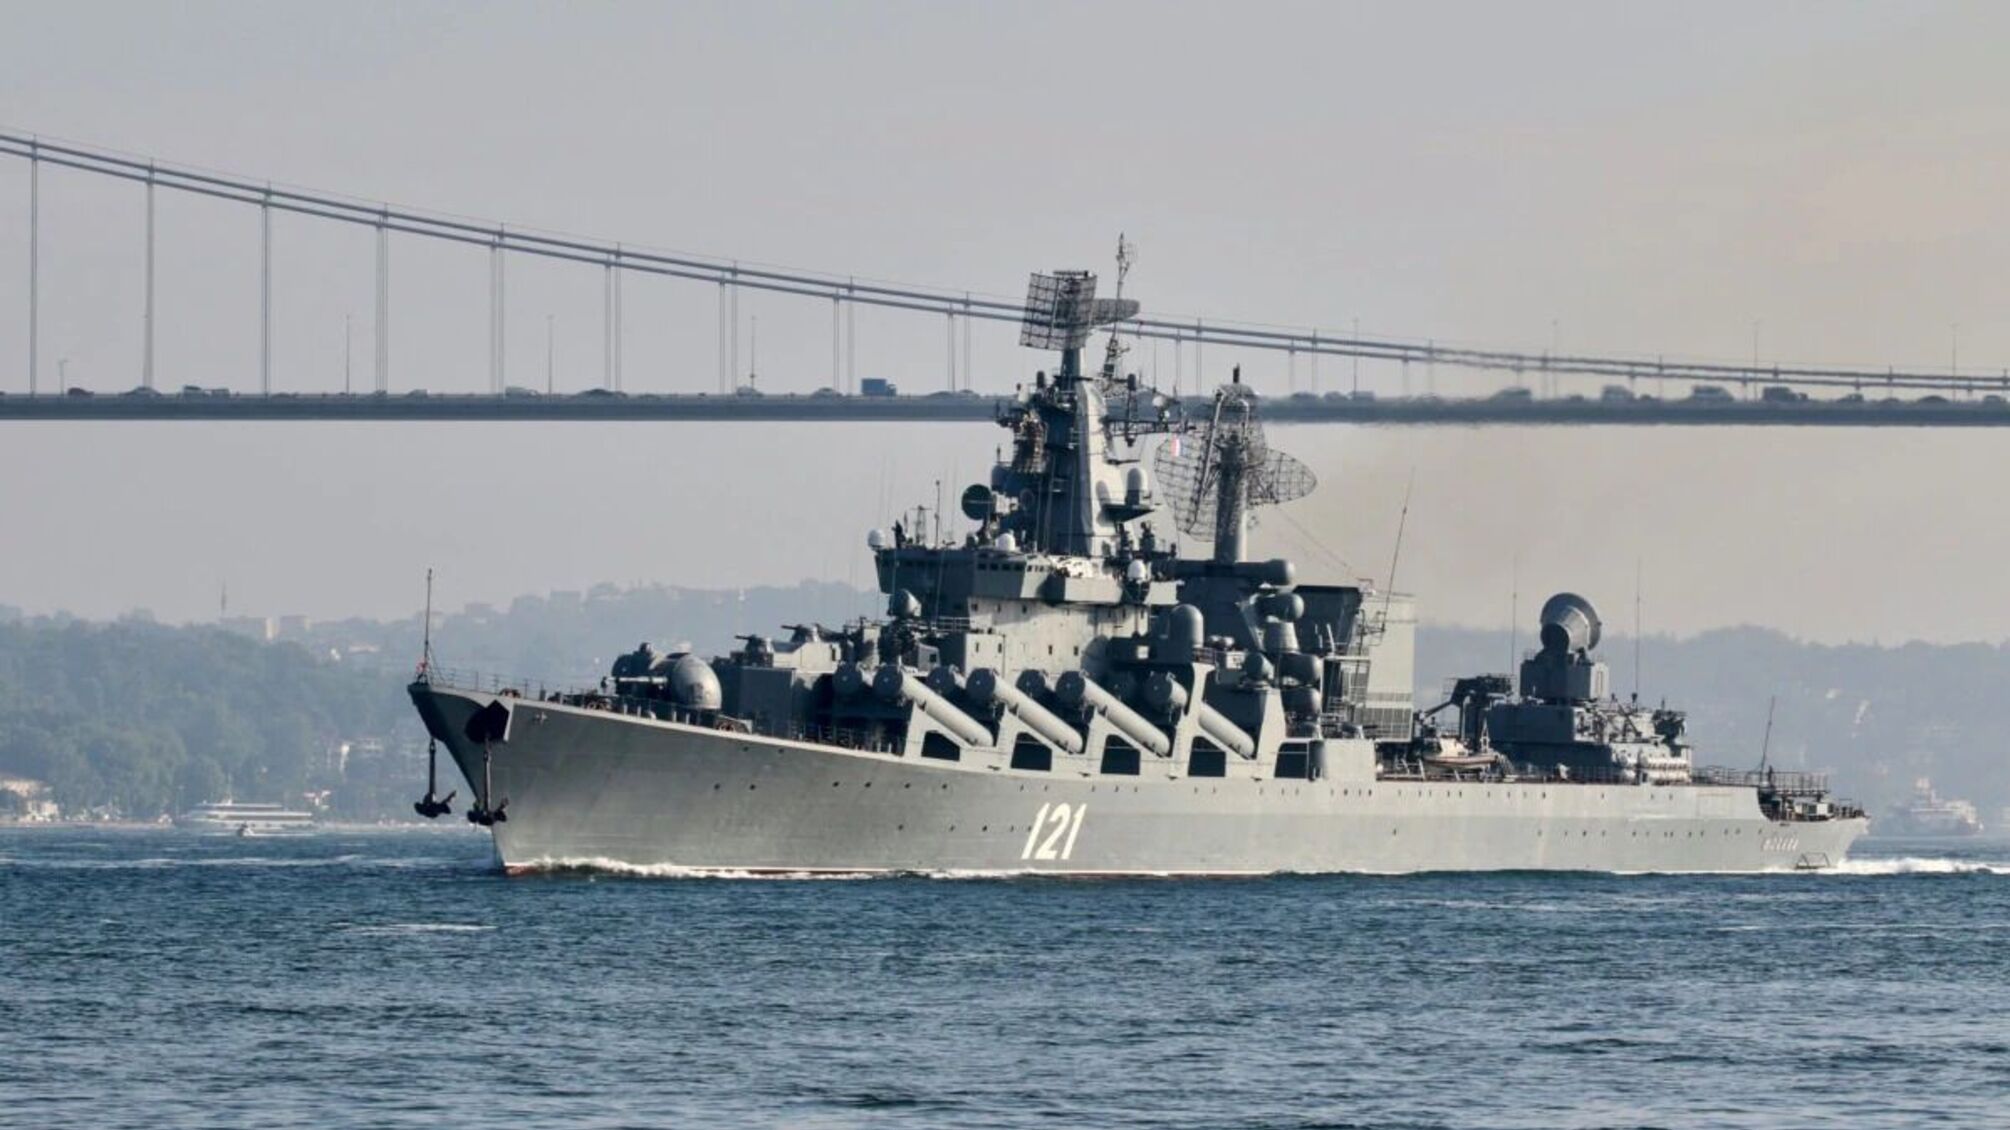 Затонулий крейсер 'Москва' оберігала християнська реліквія за 40 млн доларів, – російський журналіст